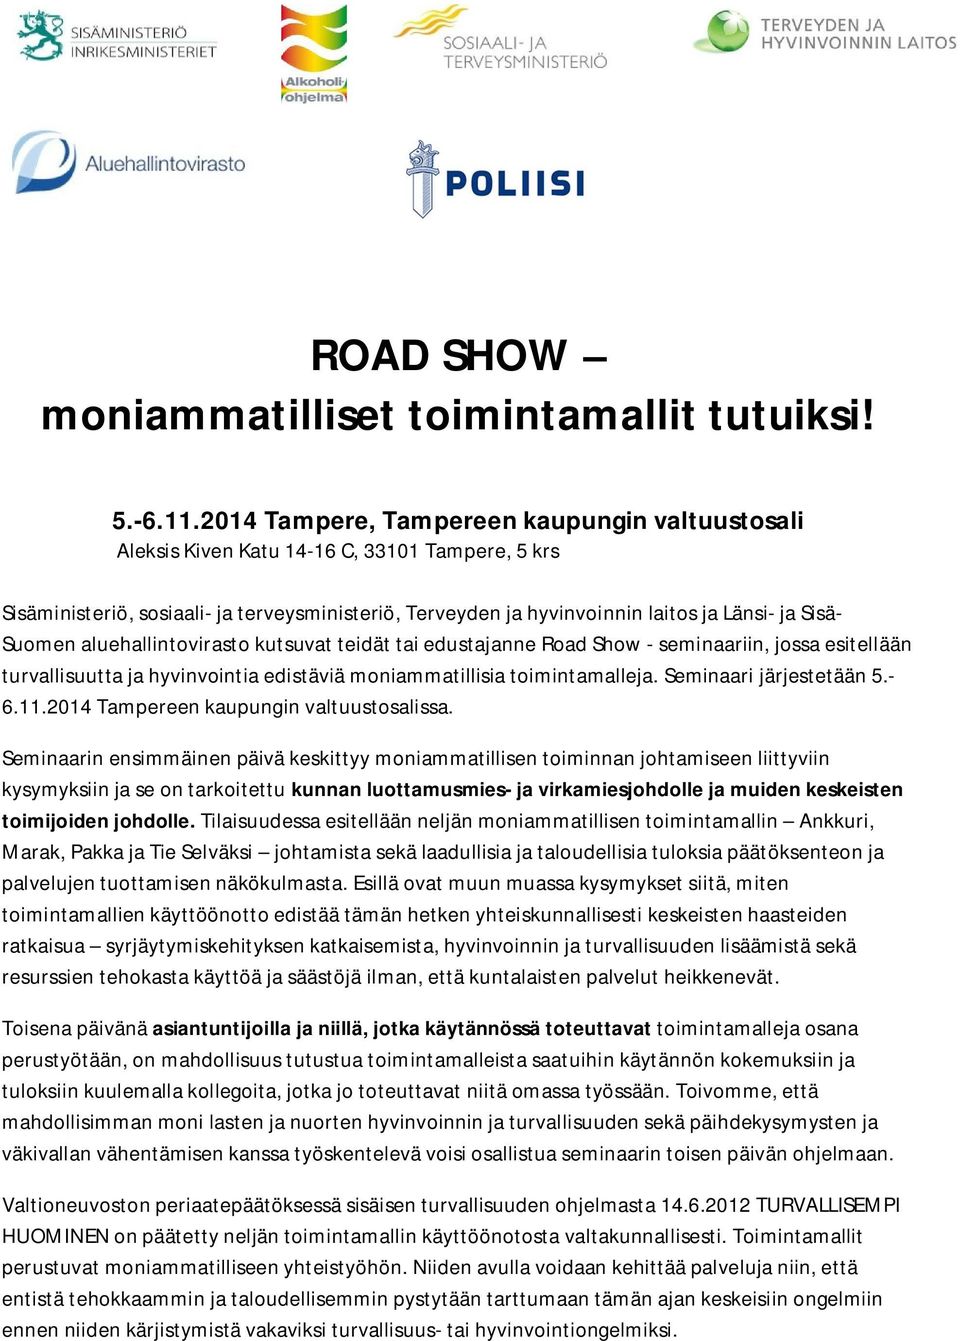 Suomen aluehallintovirasto kutsuvat teidät tai edustajanne Road Show - seminaariin, jossa esitellään turvallisuutta ja hyvinvointia edistäviä moniammatillisia toimintamalleja.